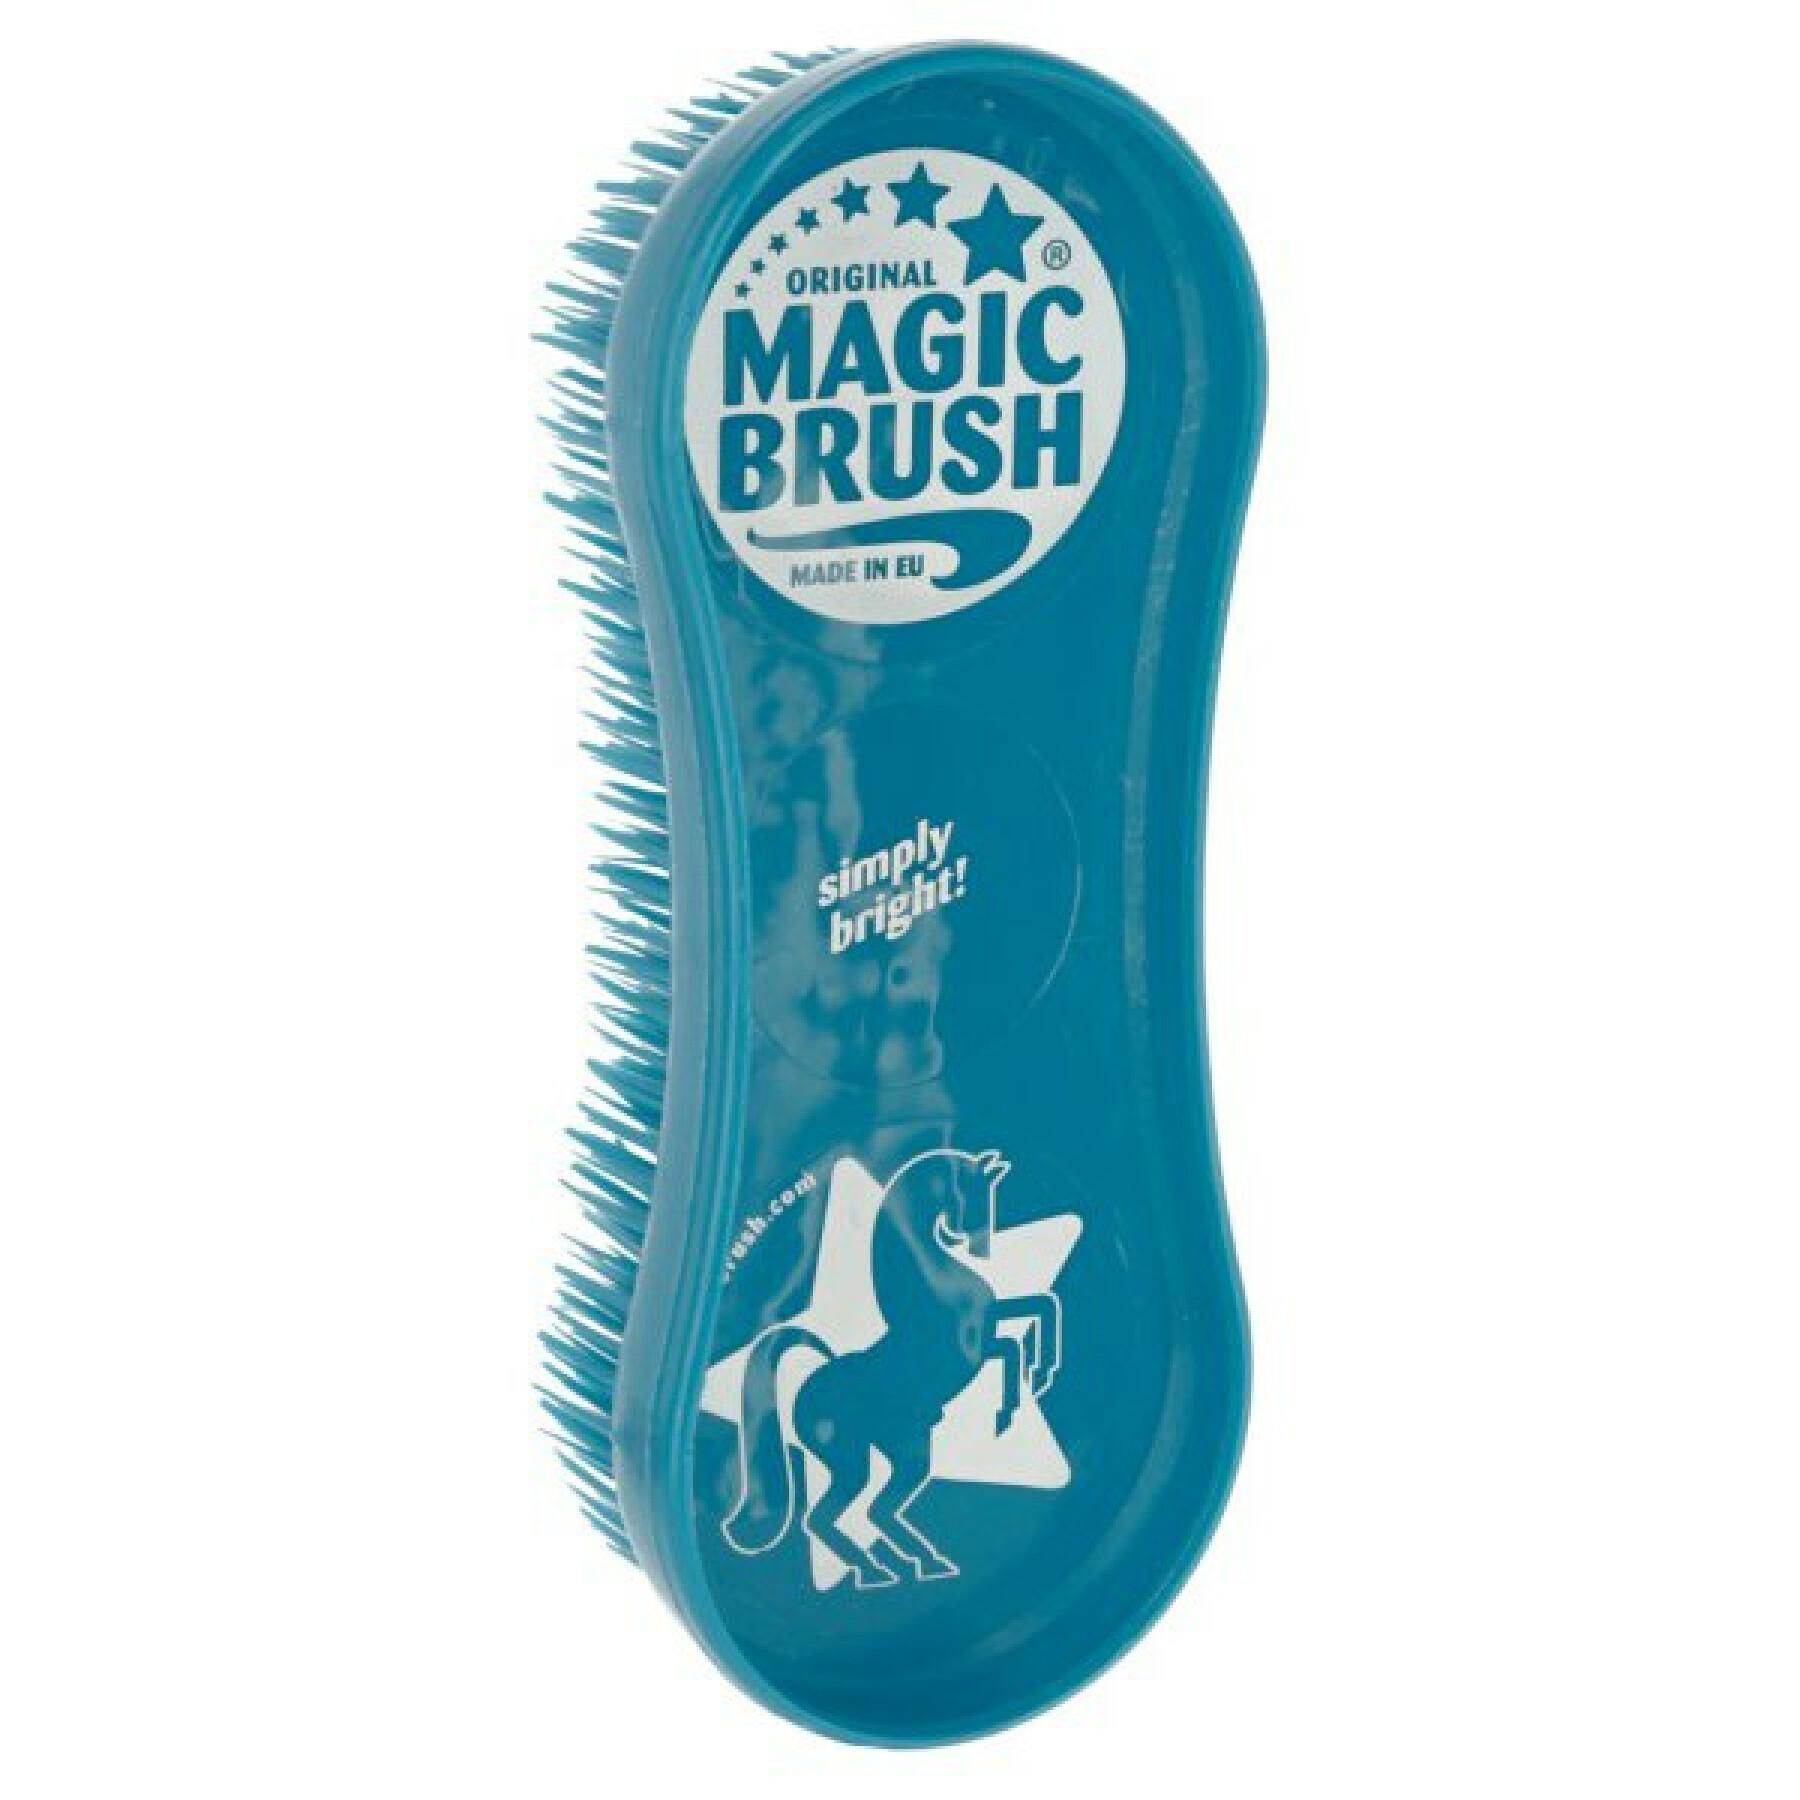 Brush Kerbl magicbrush classic